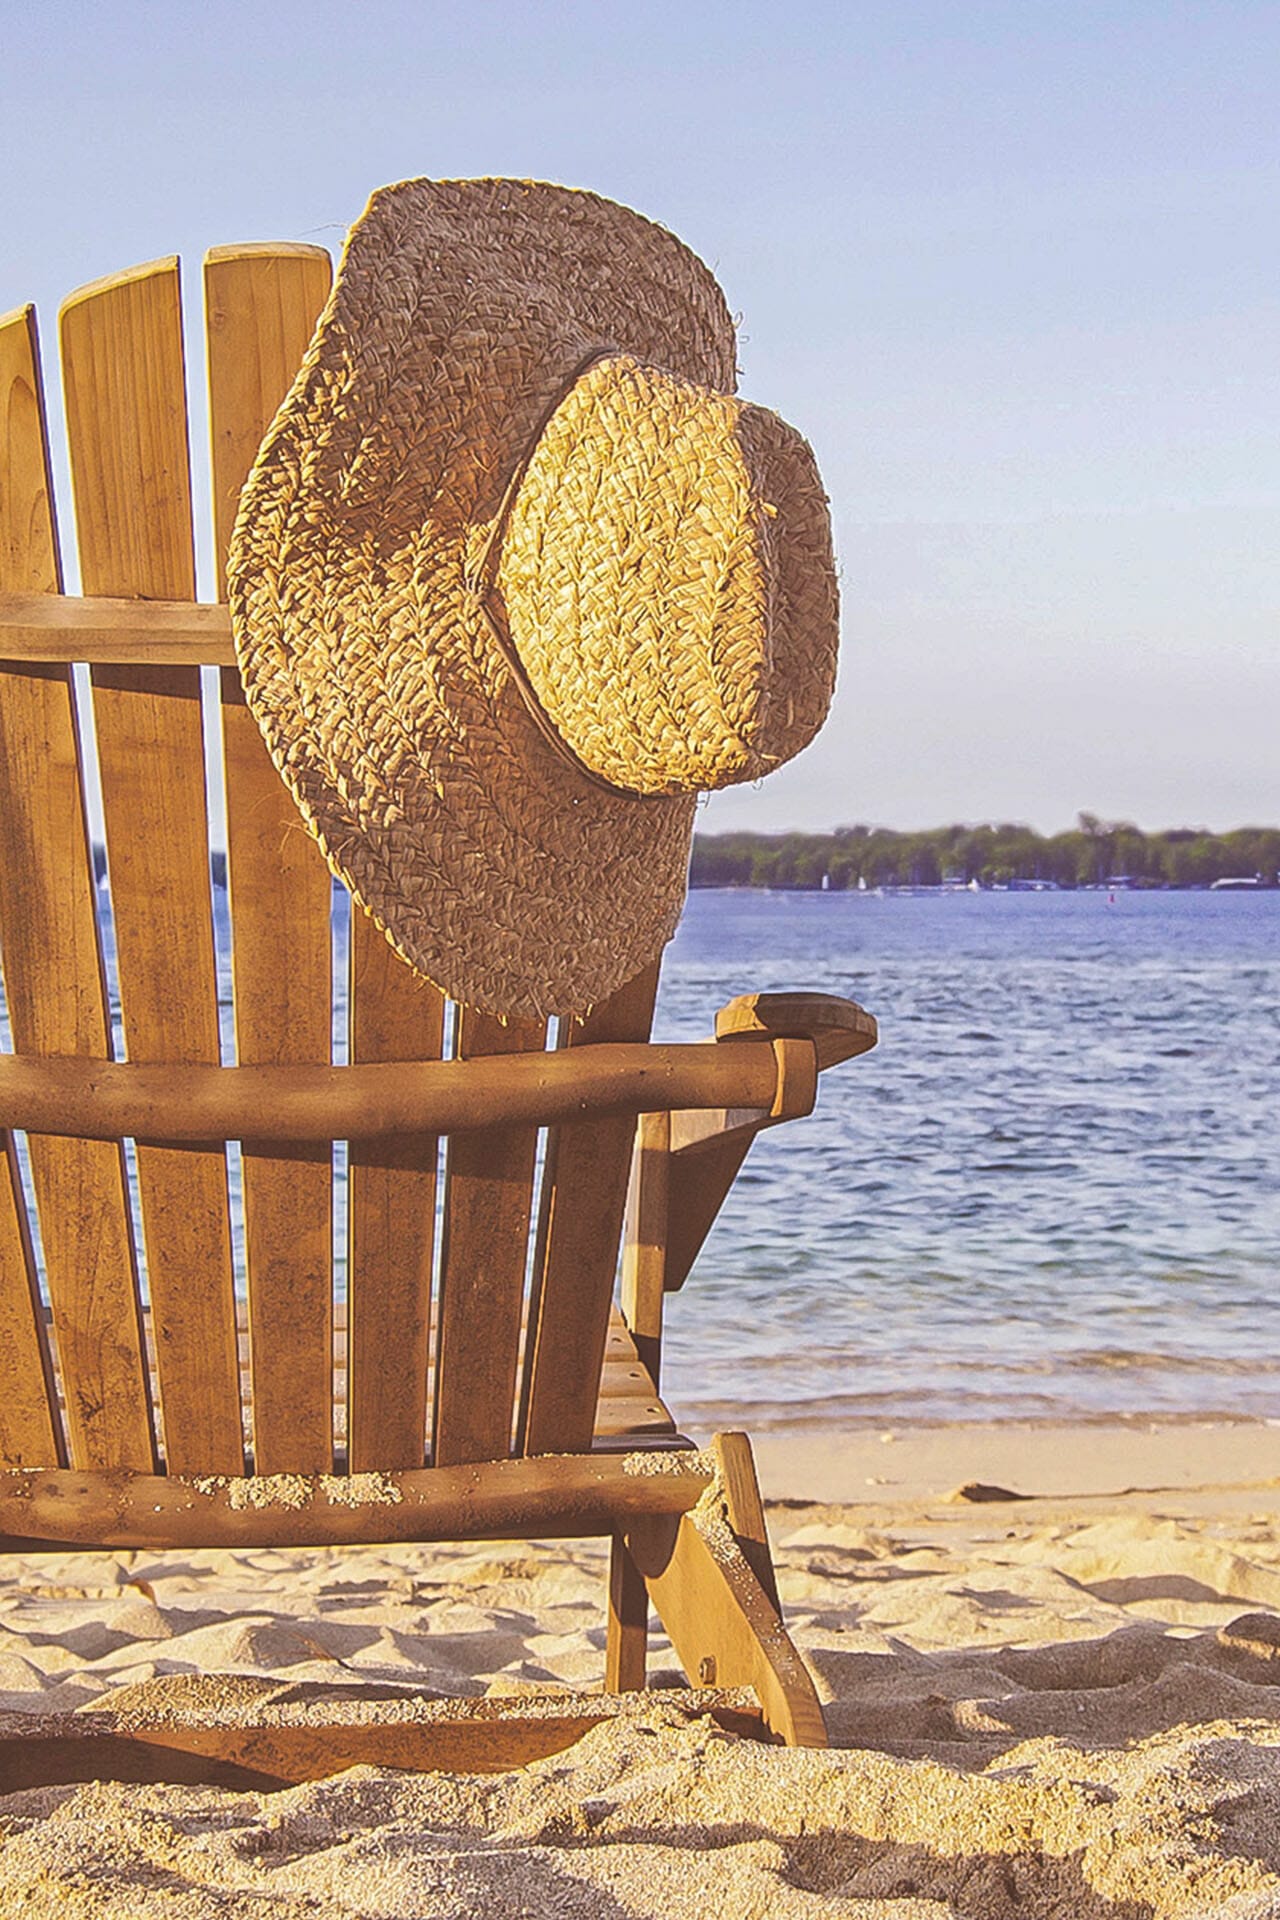 Ein Strandstuhl aus Holz am See Strand, auf dem ein Strohhut hängt.